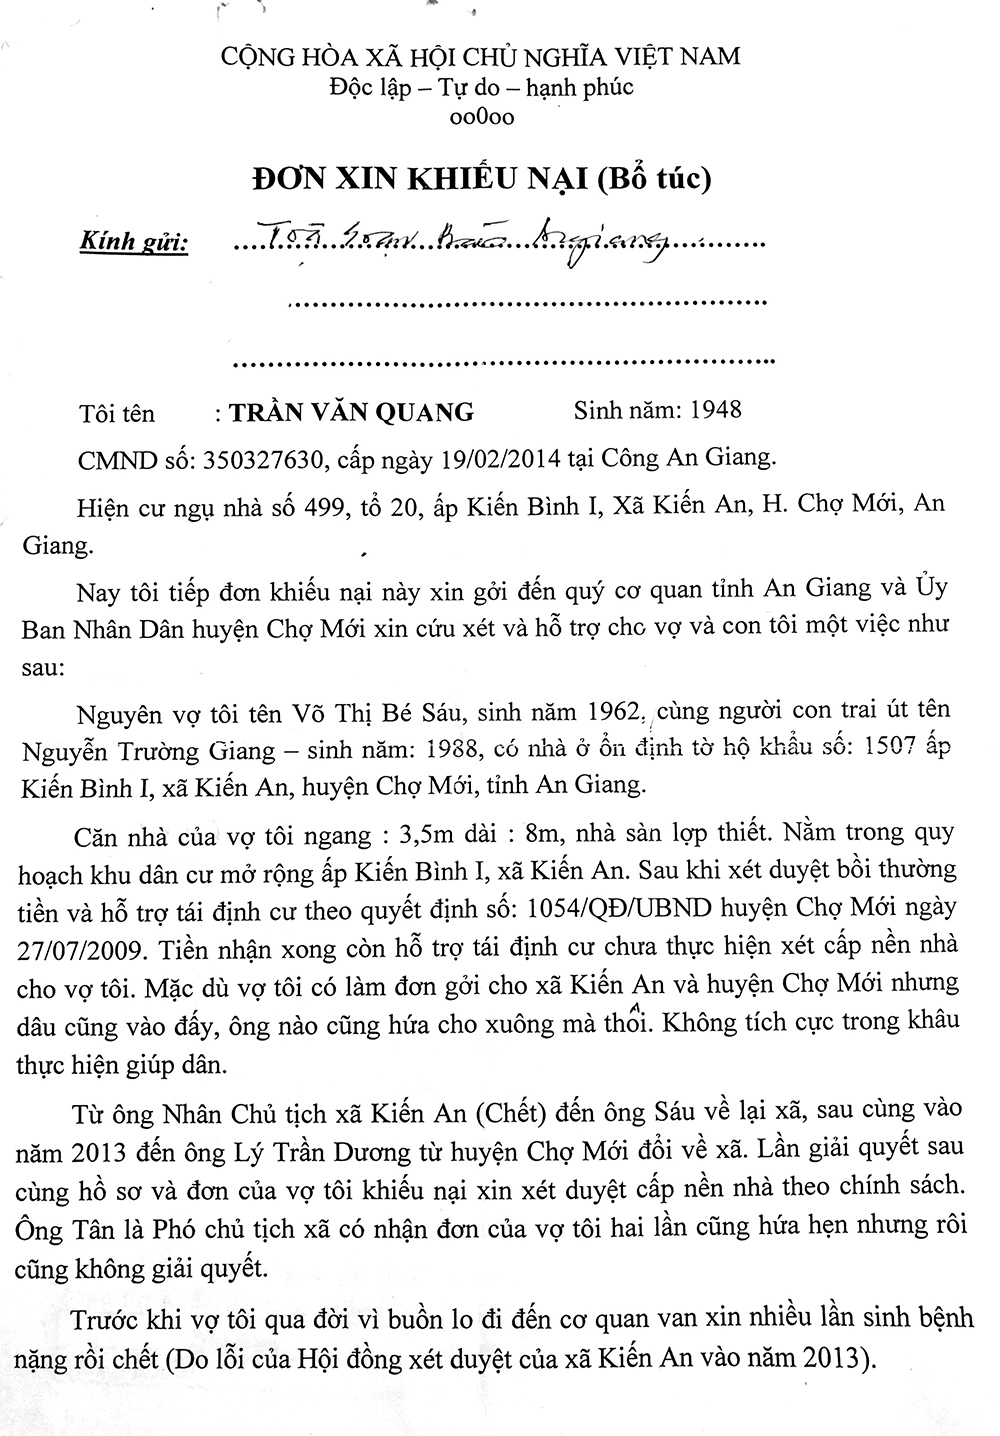 Sẽ đối thoại, giải quyết vụ việc của ông Trần Văn Quang